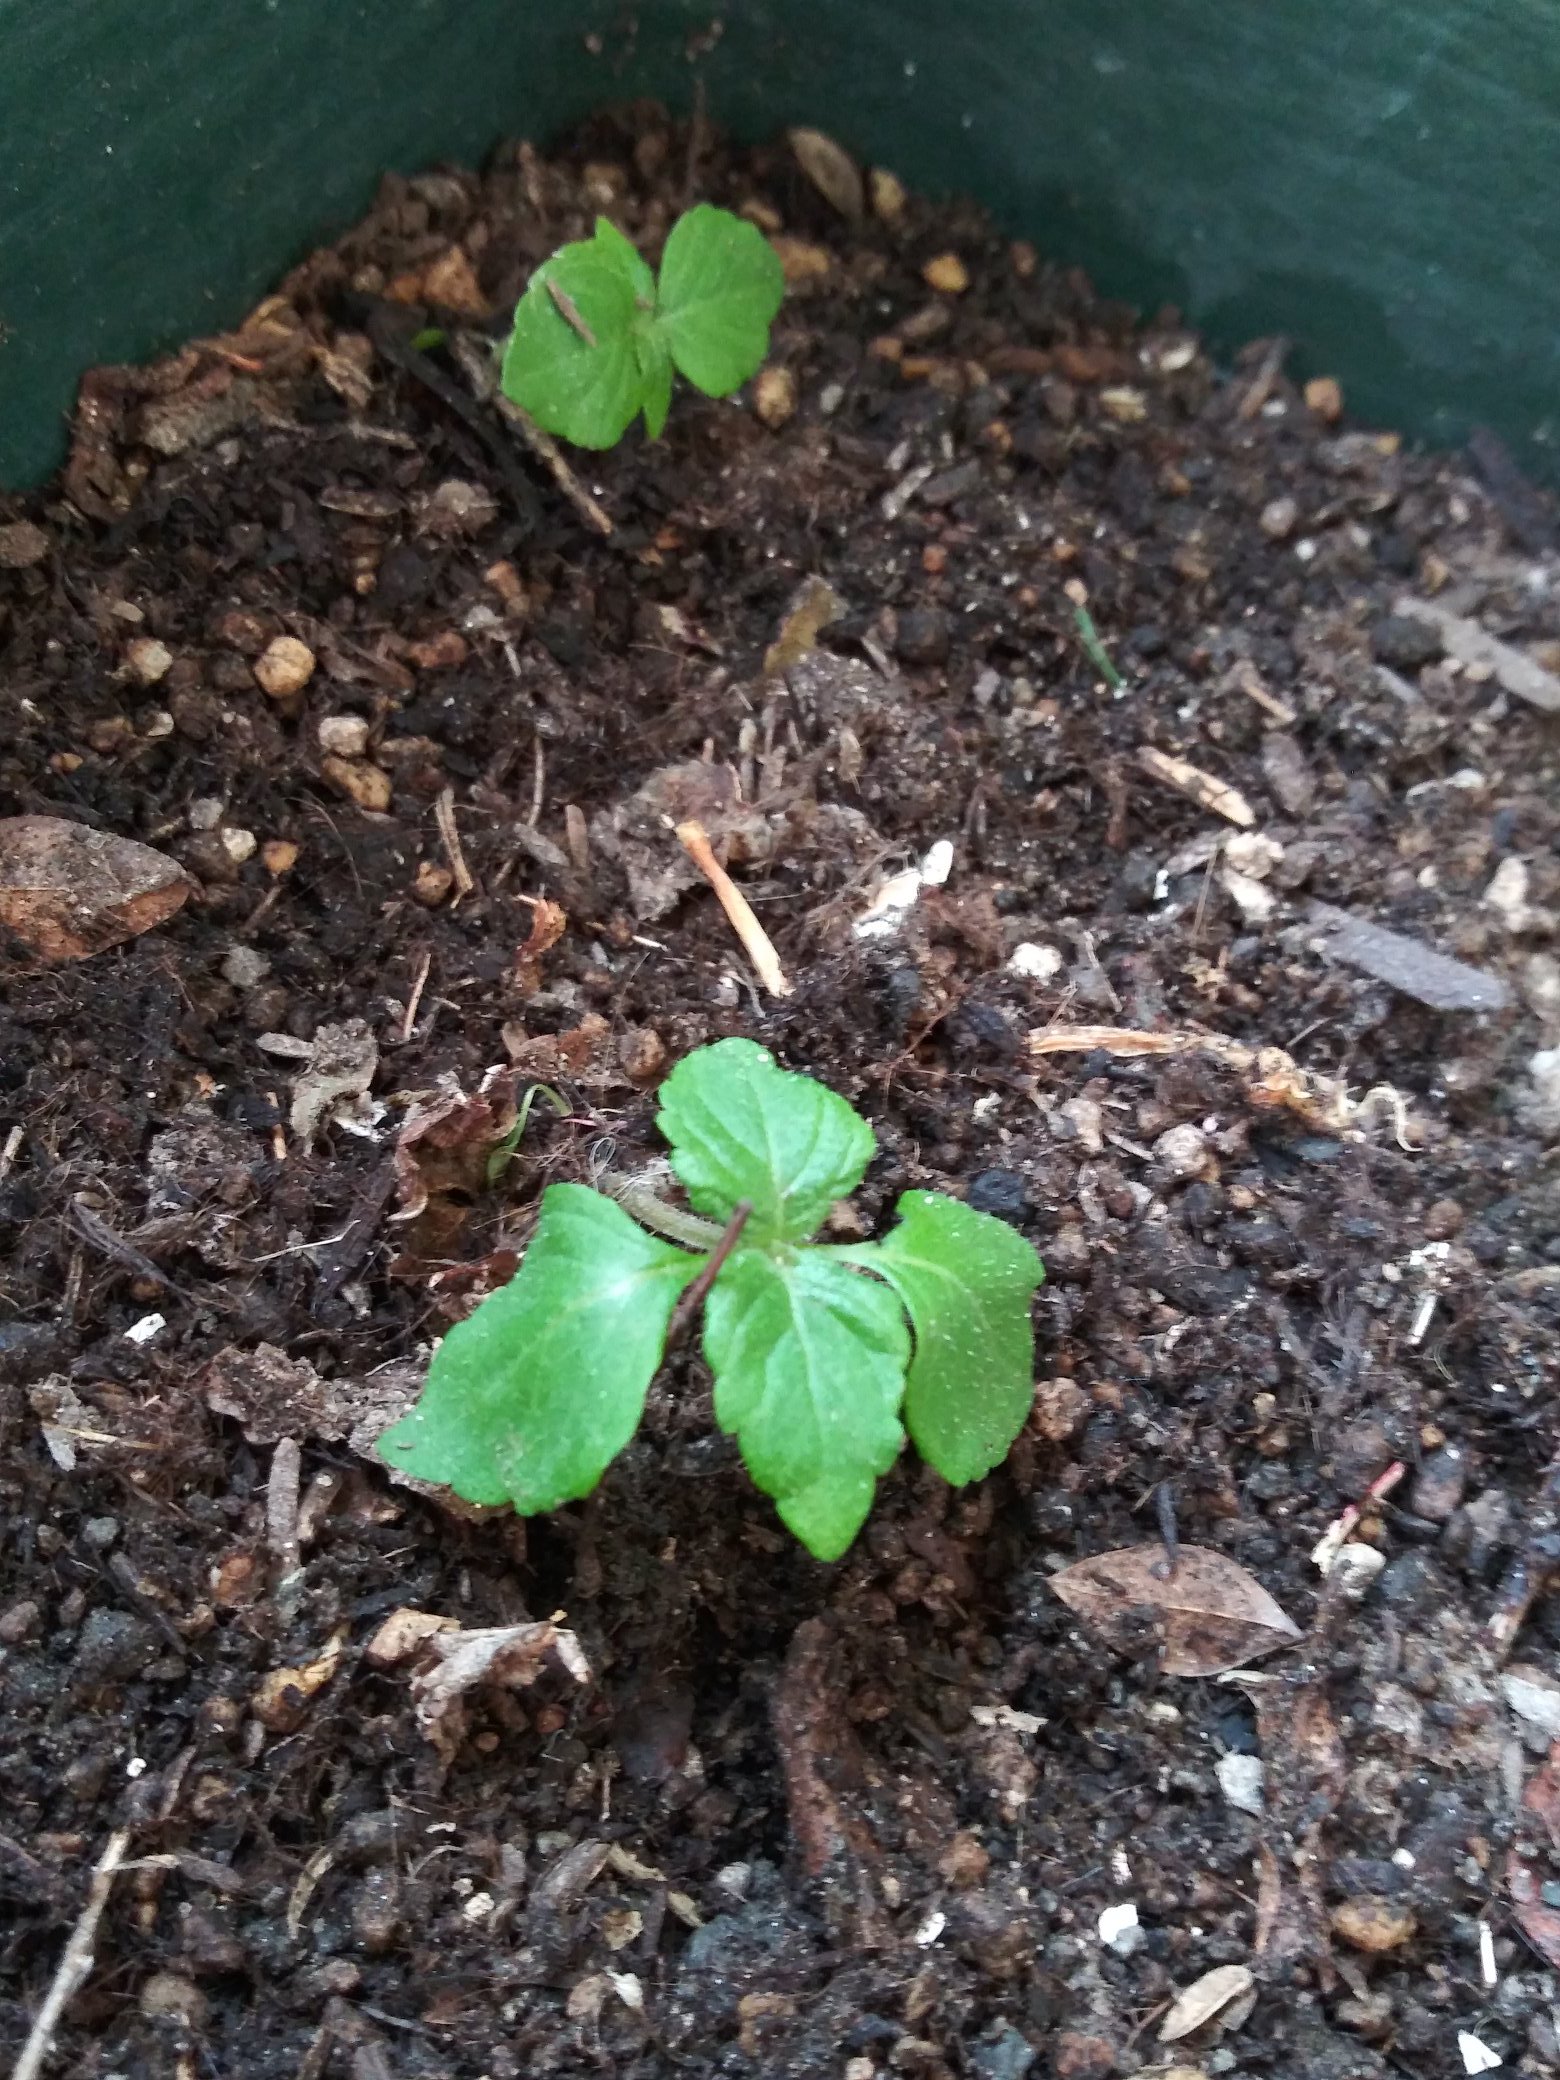 Maria 大葉 去年植えていたプランターで発芽してました 今年は苗を買わなくて良さそうです 大葉 青じそ T Co 3qewnos533 Twitter